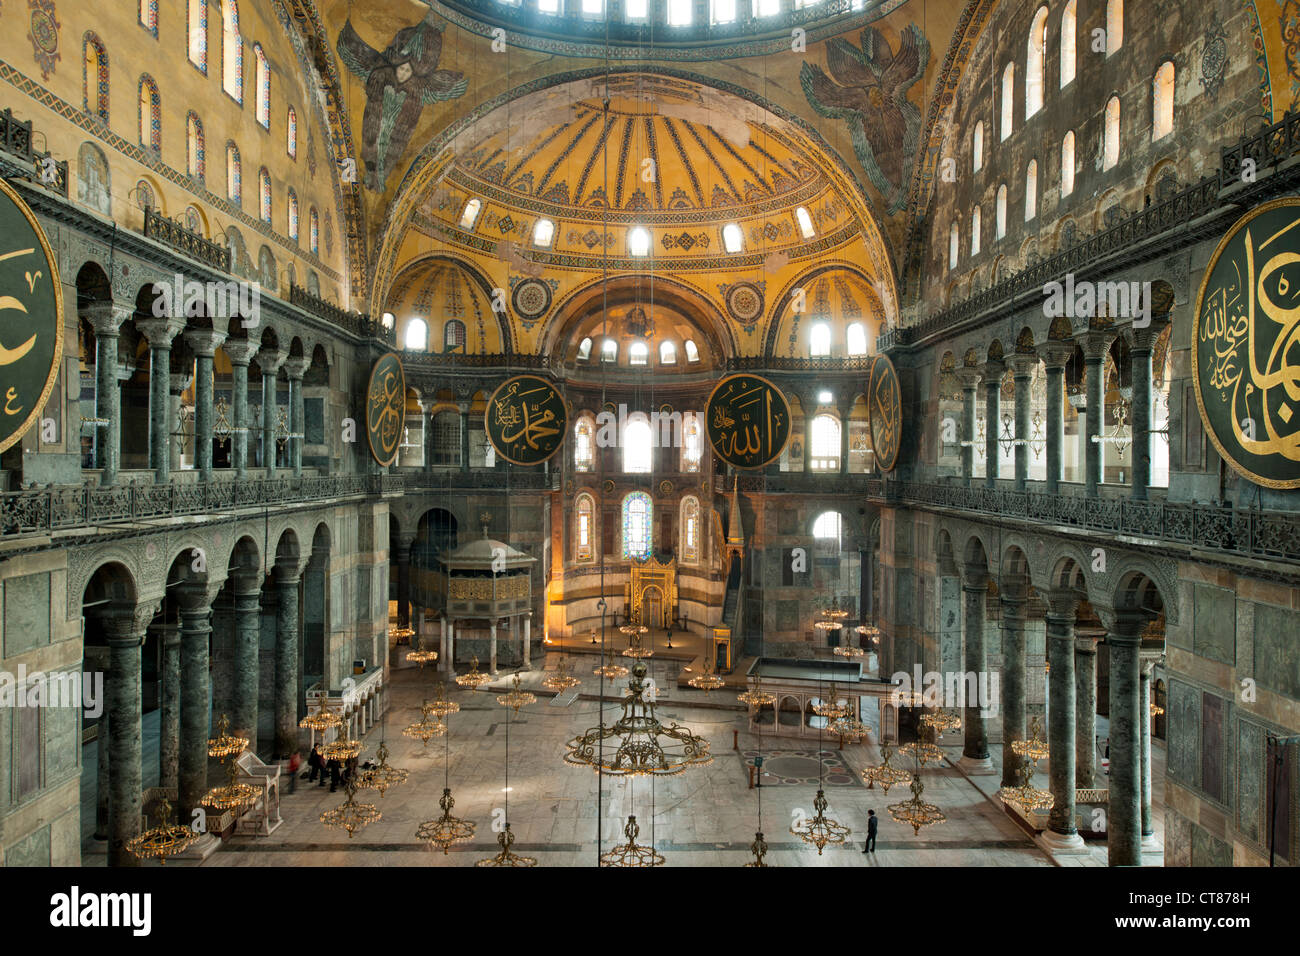 Turkey, Istanbul, Sultanahmet, Hagia Sophia oder Sophienkirche, eine ehemalige Kirche, spätere Moschee und heute ein Museum. Stock Photo